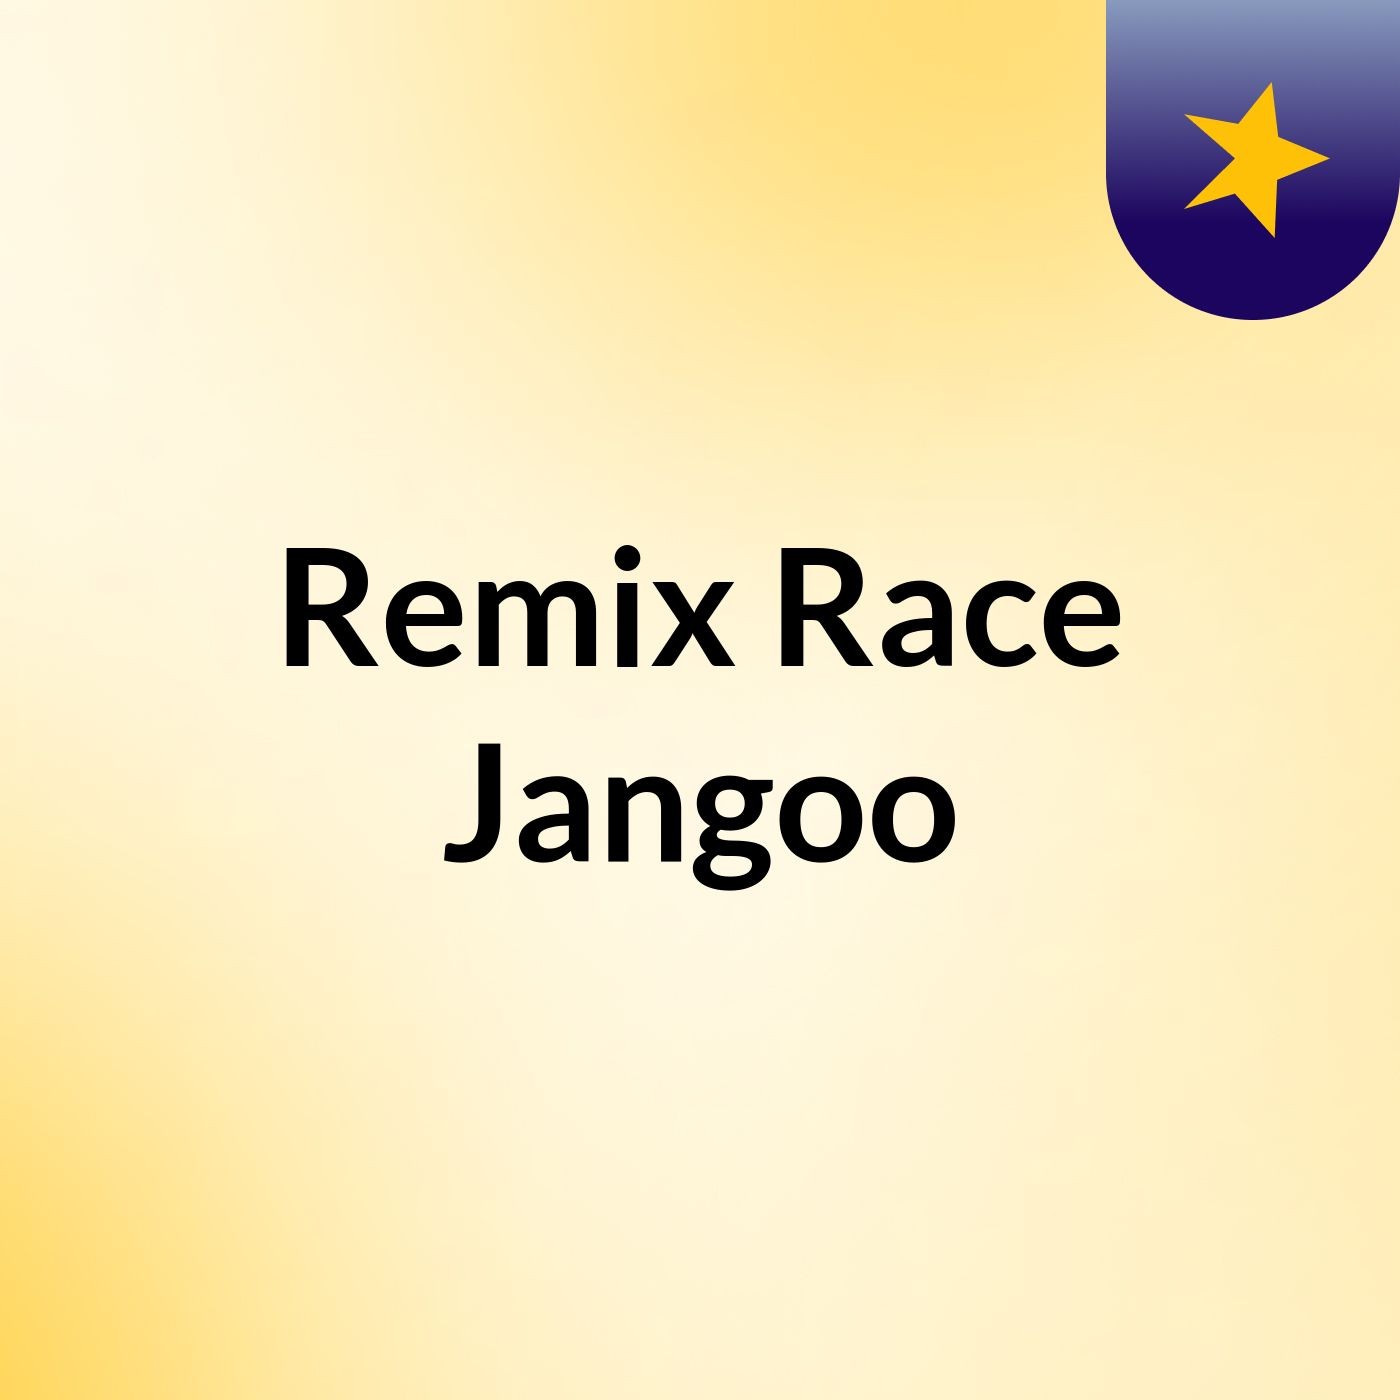 ReMix Race Jango